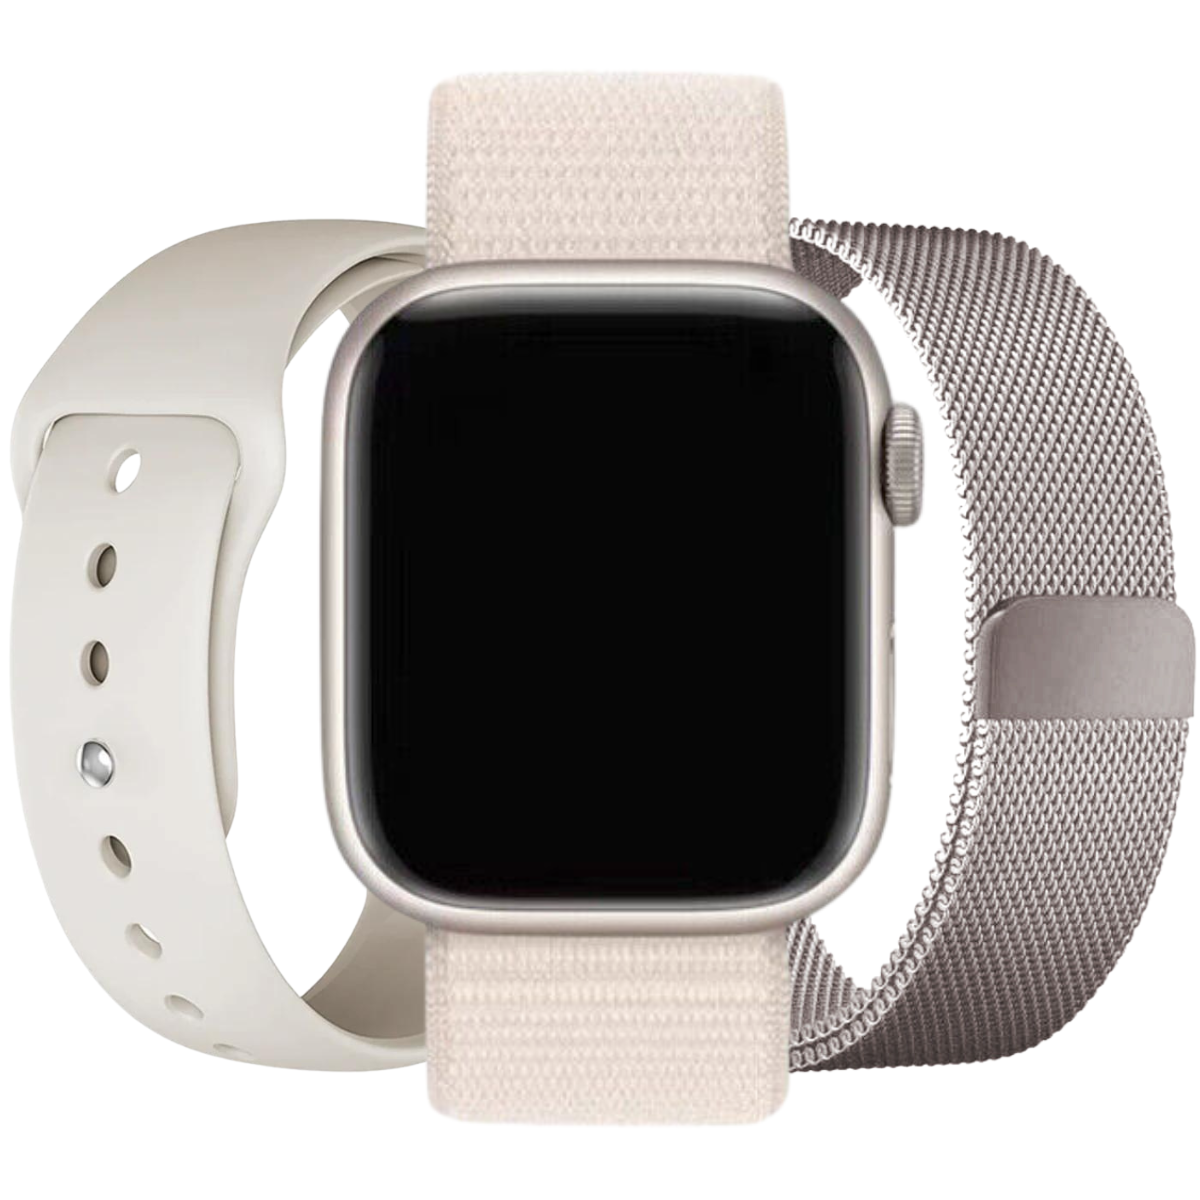 Blanco estrella Apple Watch paquete ventajoso - 3x